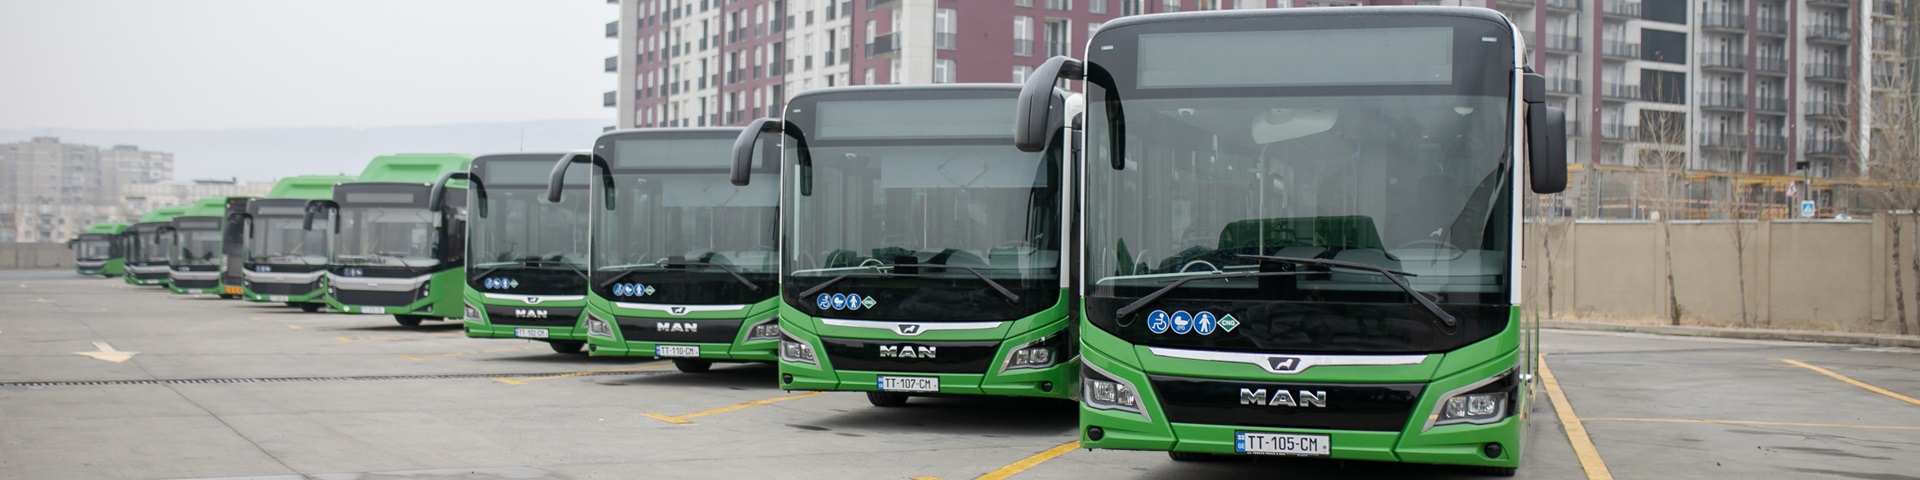 Neue 18 Meter lange grüne Busse mit georgischen Nummernschildern stehen auf einem Parkplatz.